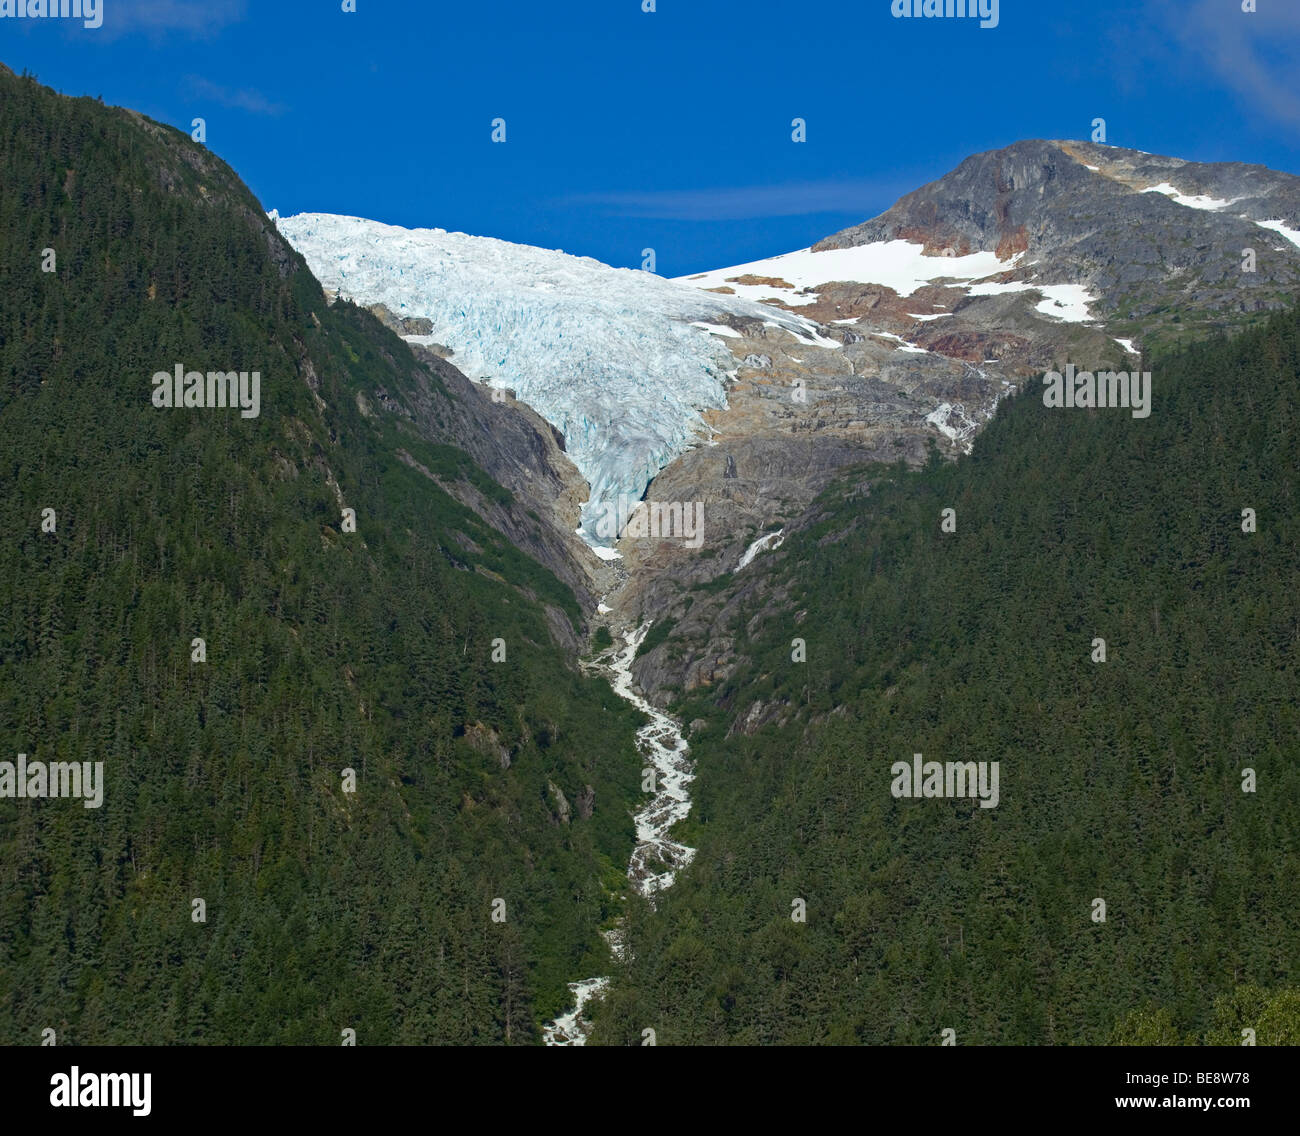 Irene ghiacciaio, nei pressi di Finnegan punto, Pacific Northwest Coastal Rain Forest, storico Chilkoot Trail, Chilkoot Pass, Alaska, STATI UNITI D'AMERICA Foto Stock